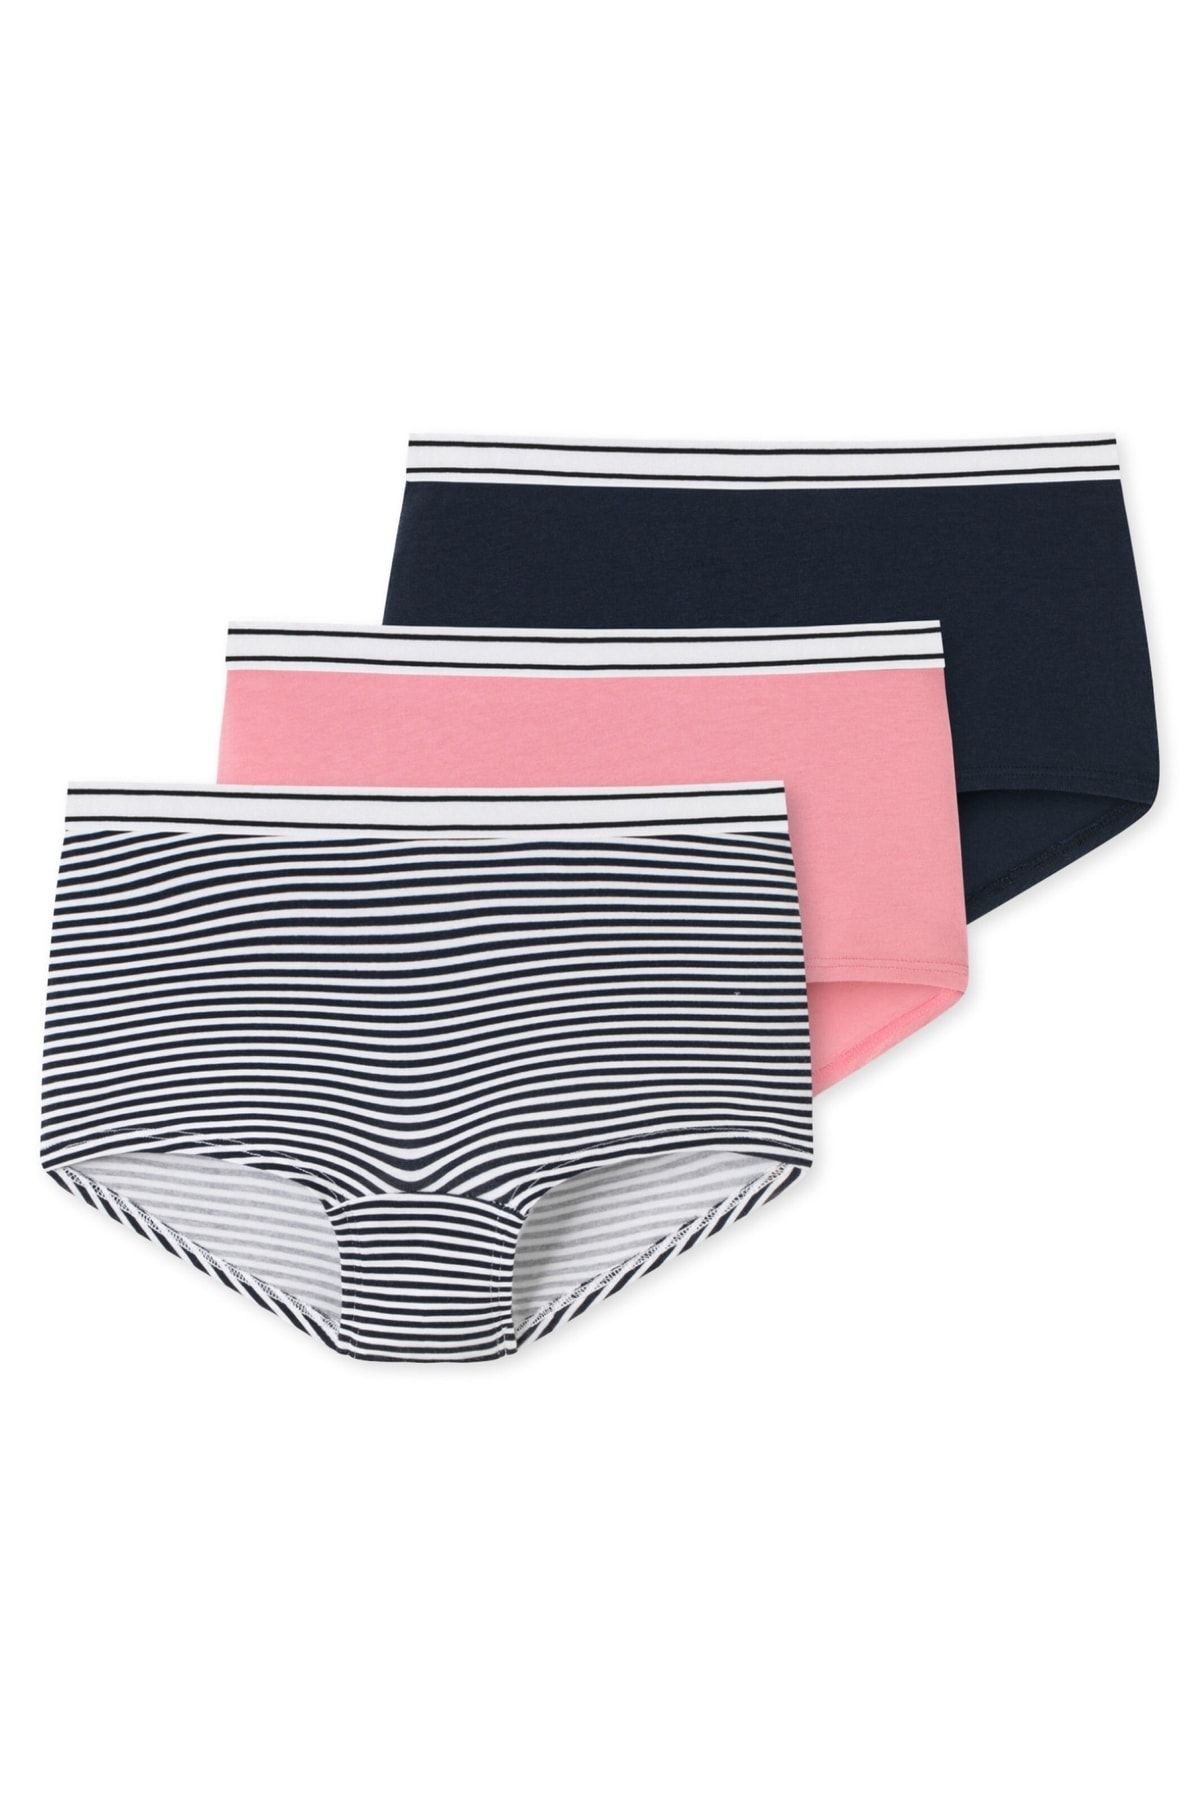 SCHIESSER Ladies Shorts, 3-Pack - Underwear, Underpants, Cotton, unic,  29,95 €